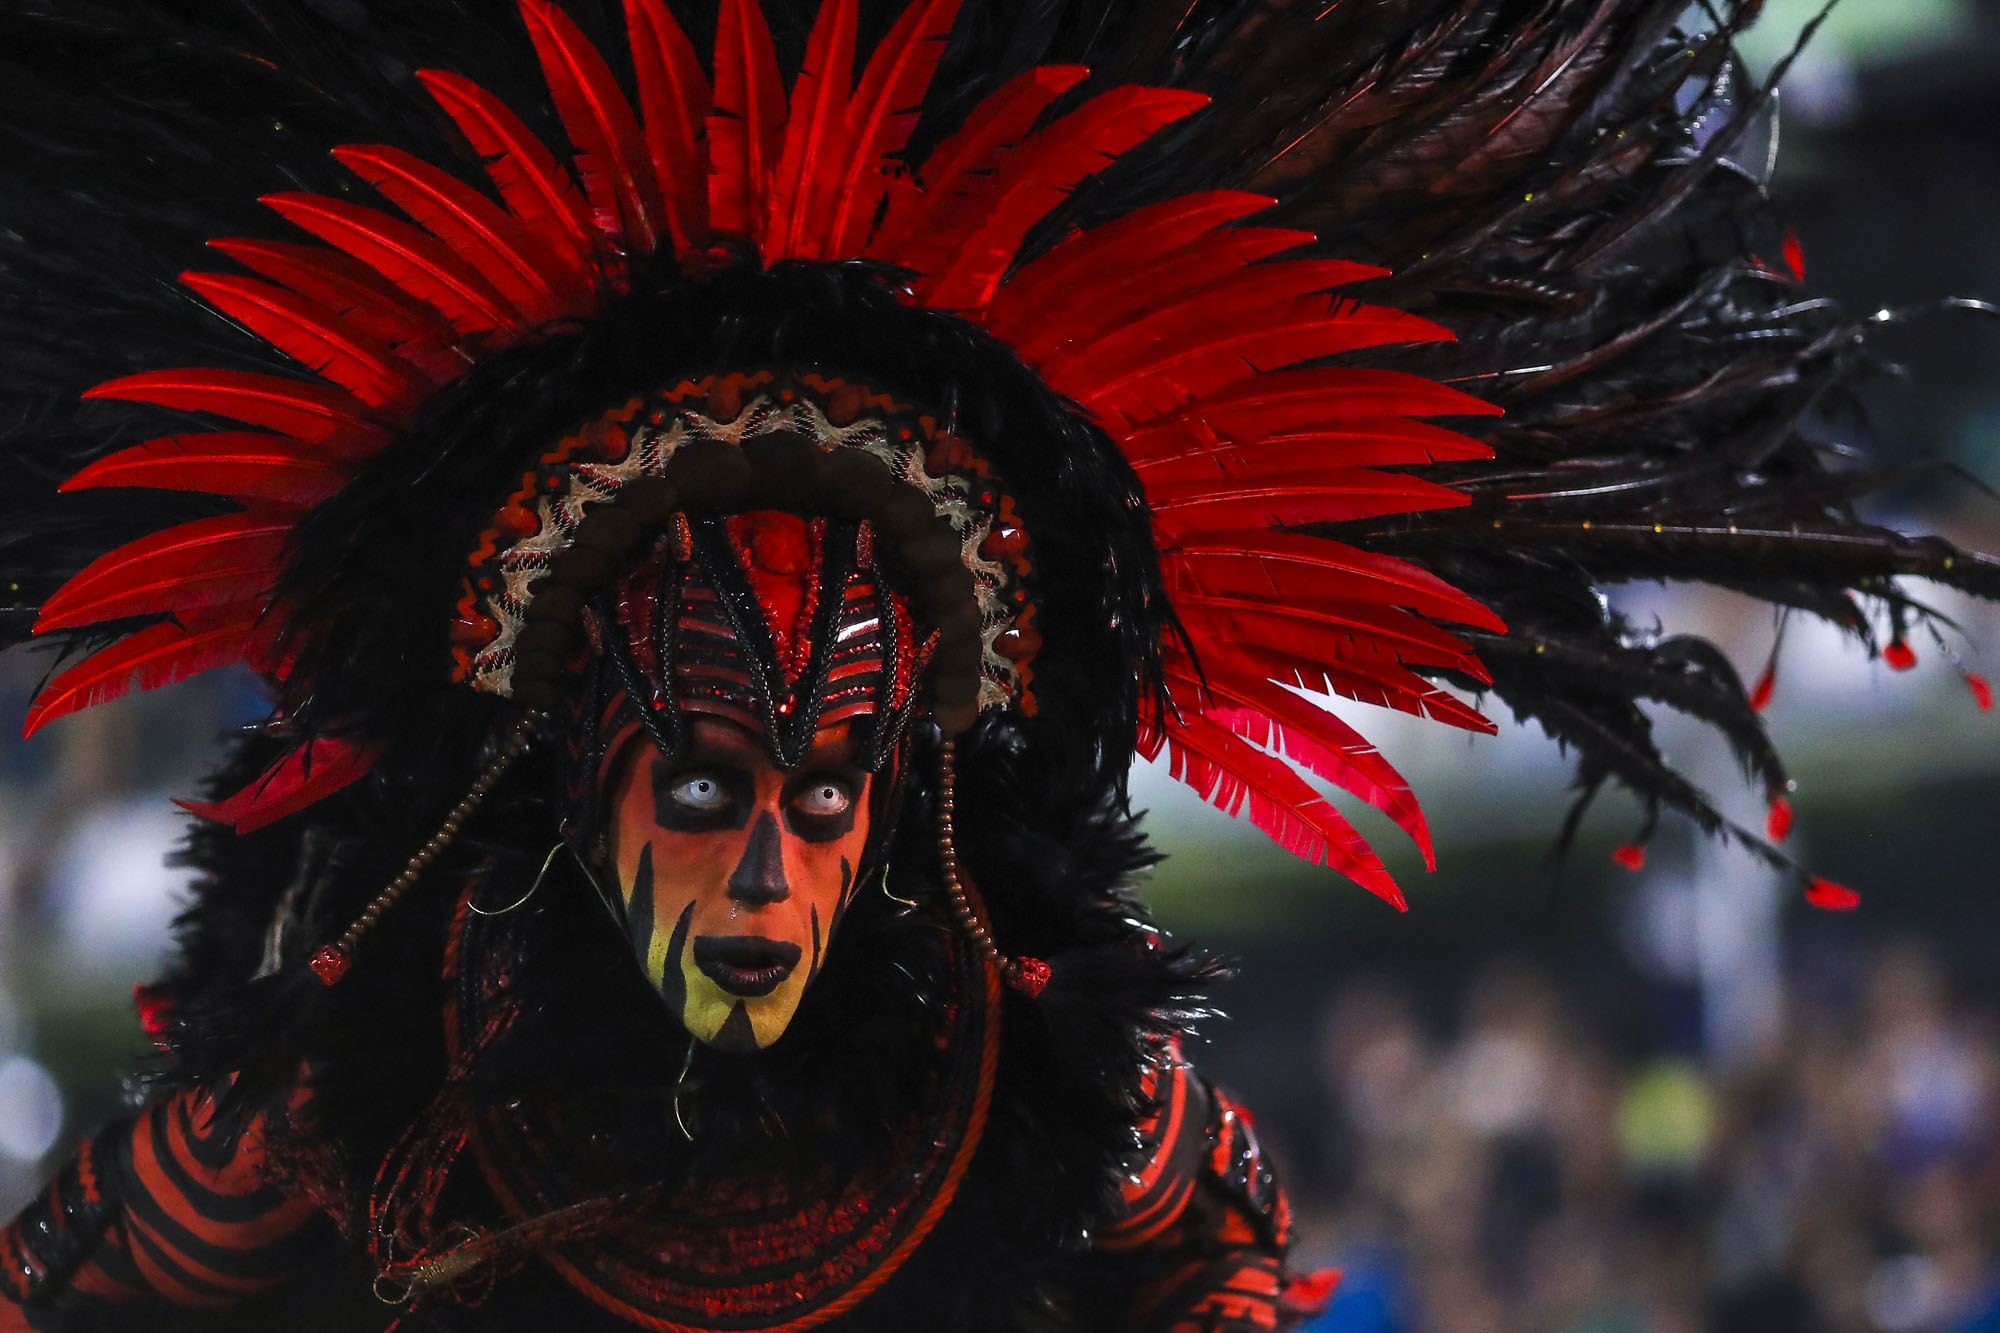 Brazil Carnival 2022 Dates